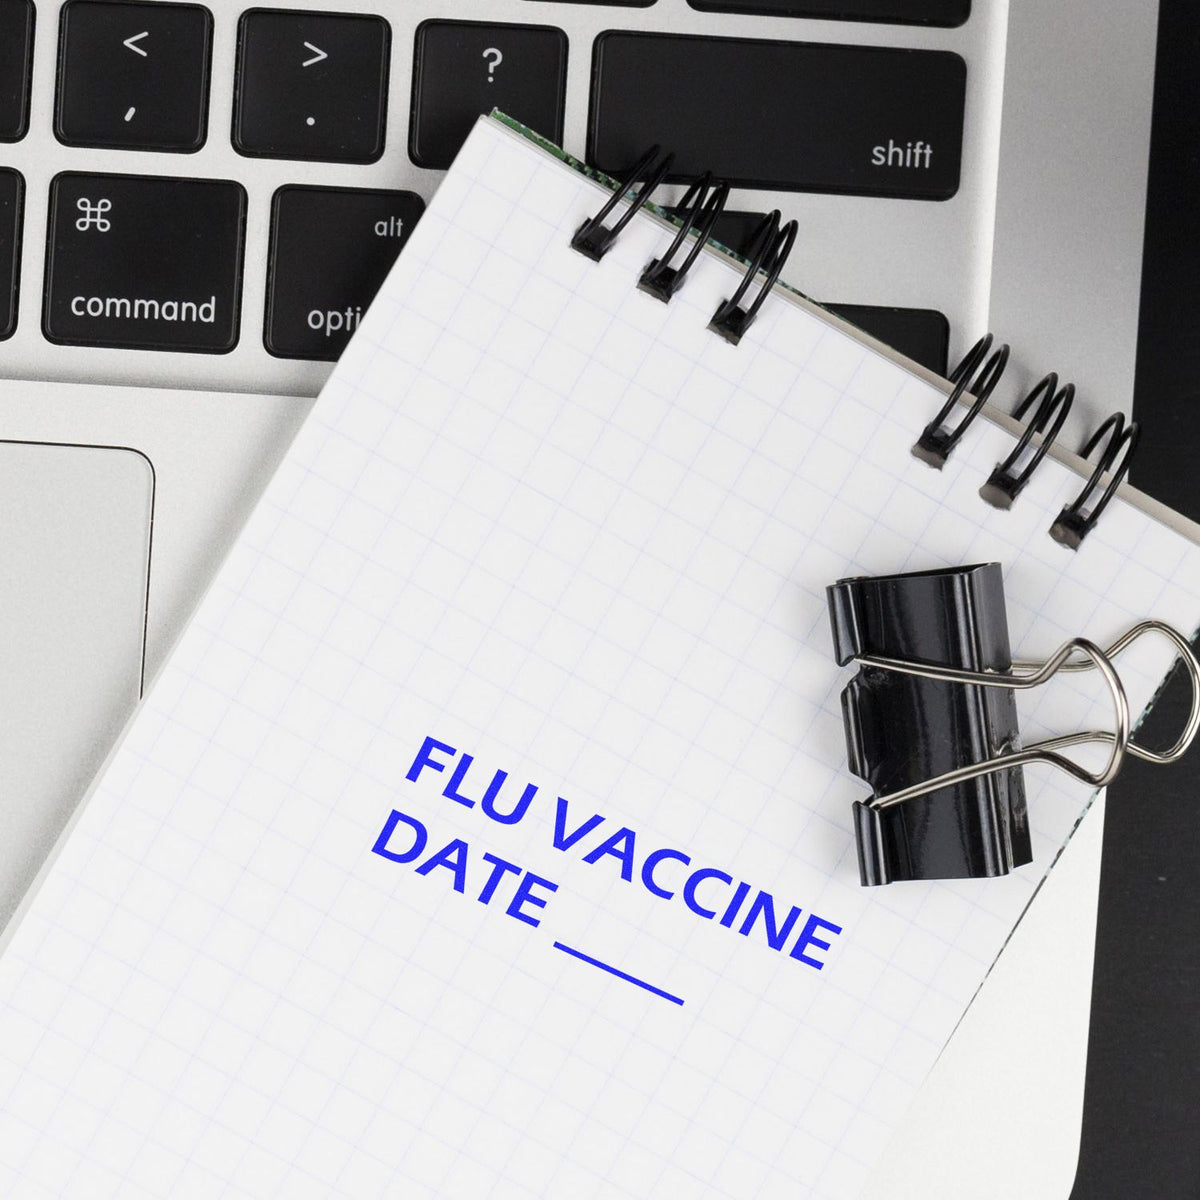 Flu Vaccine Date Rubber Stamp In Use Photo